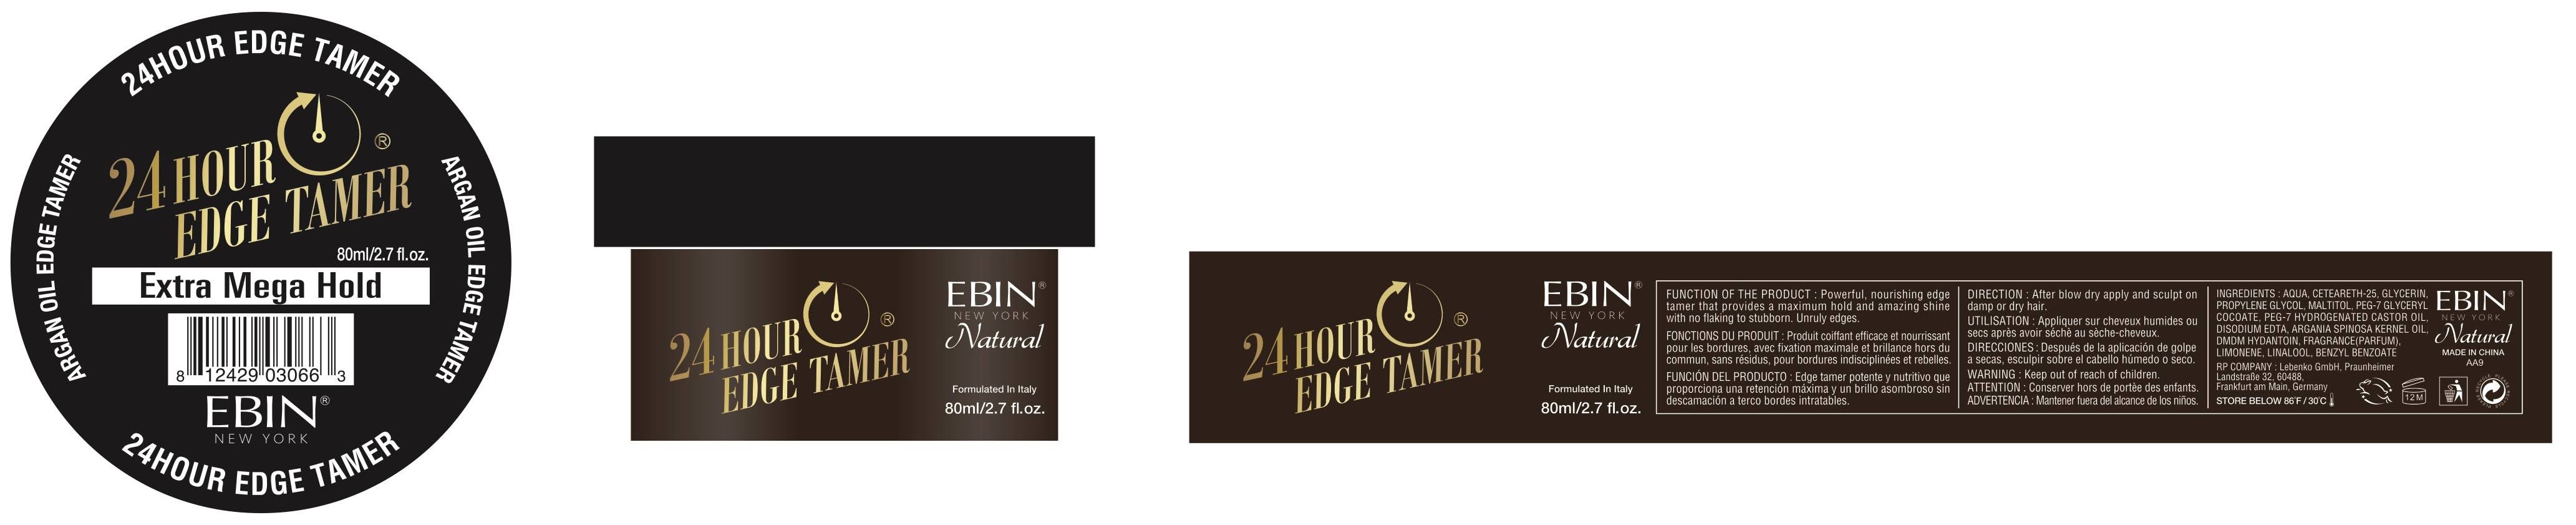 Ebin Edge Tamer, 24 Hour, Extra Mega Hold - 80 ml